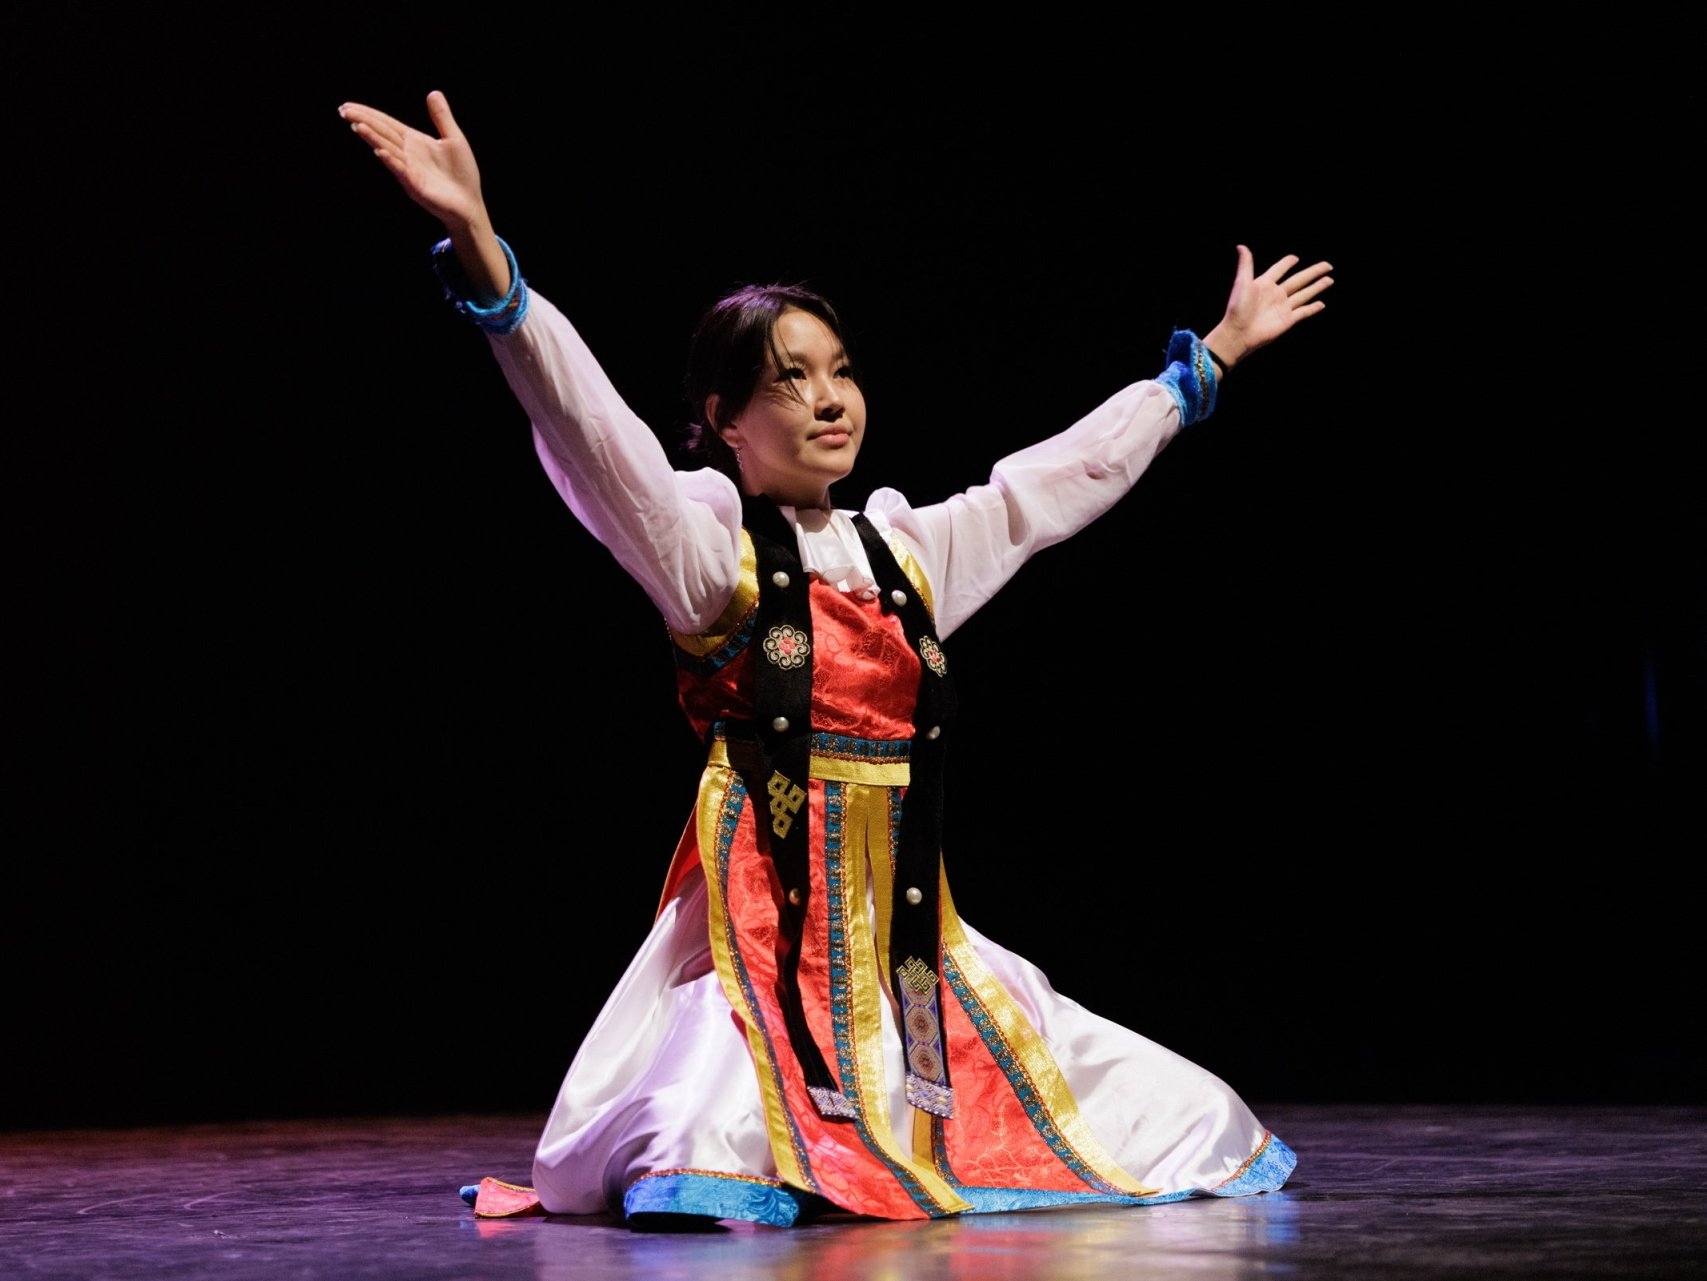 Azzaya Baasansuren de la classe 11VP2, présente une démonstration de danse mongole lors des promotions de l'Etablissement secondaire de Morges-Beausobre le 1er juillet 2022.